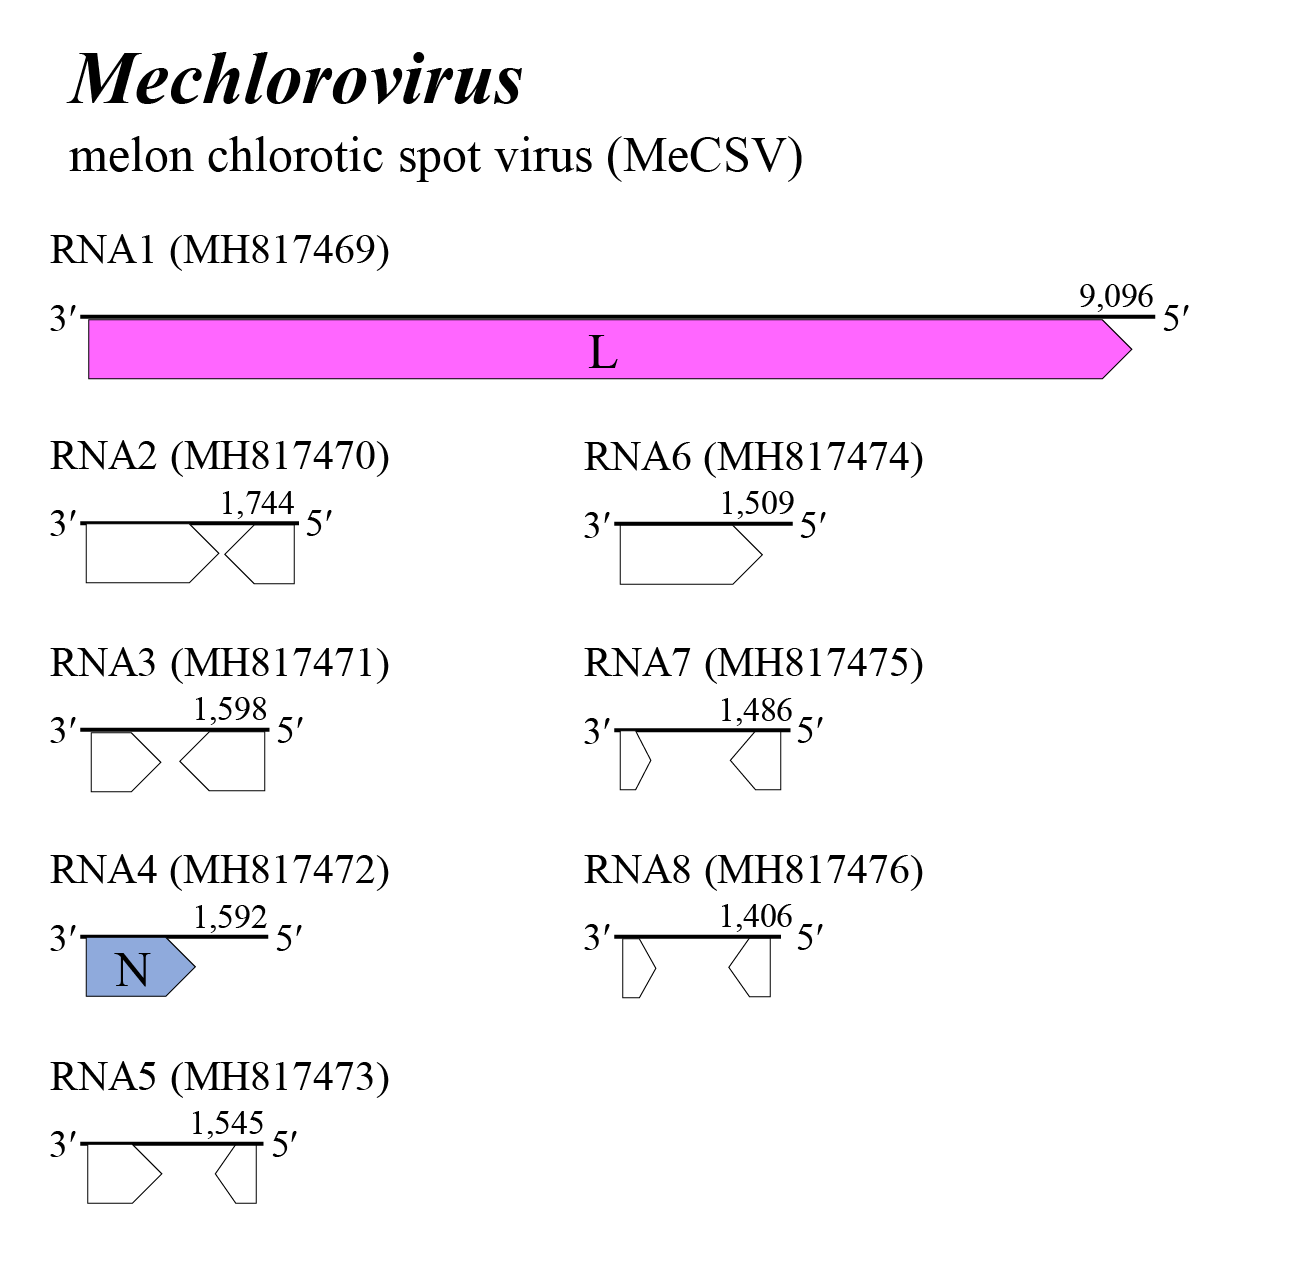 Mechlorovirus genome